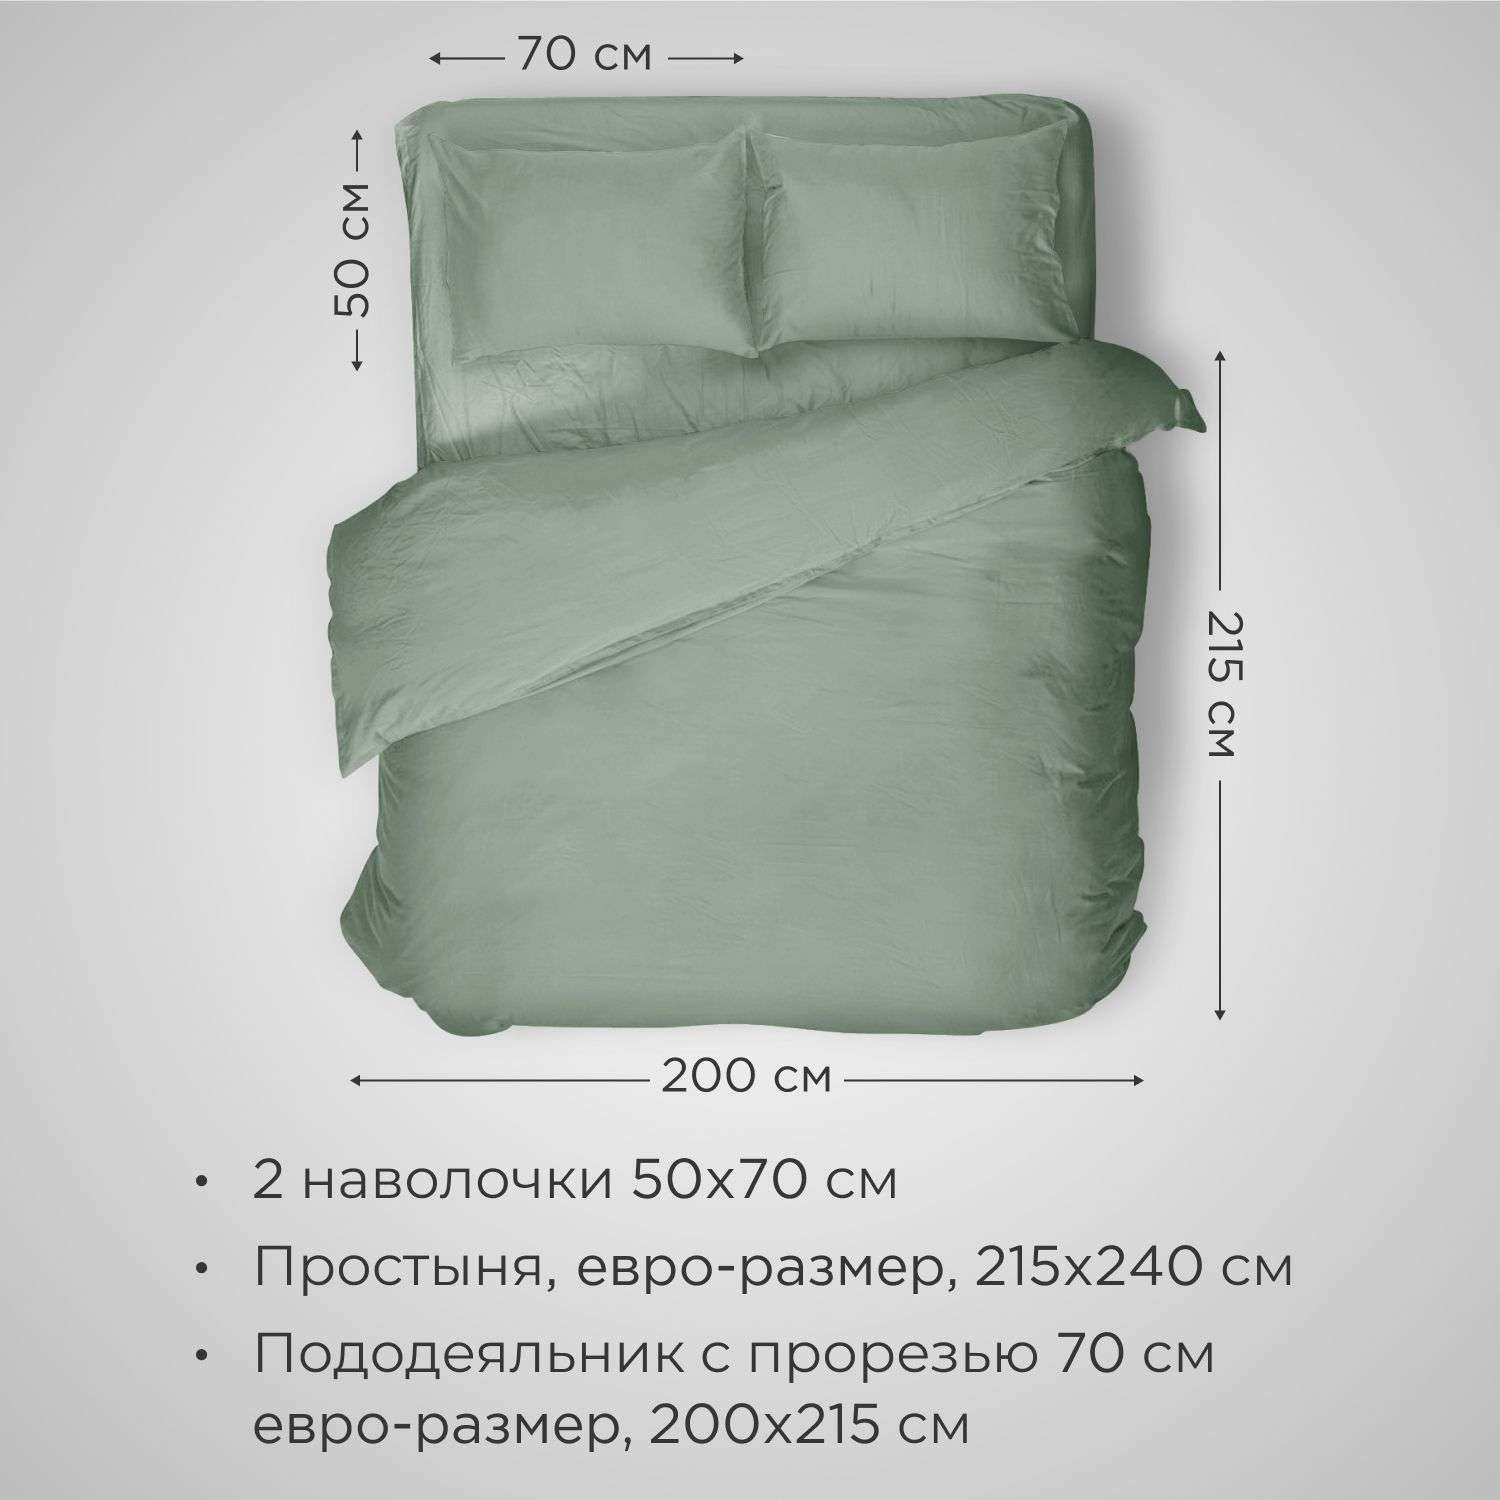 Комплект постельного белья SONNO URBAN FLOWERS евро-размер цвет Светло-оливковый - фото 2